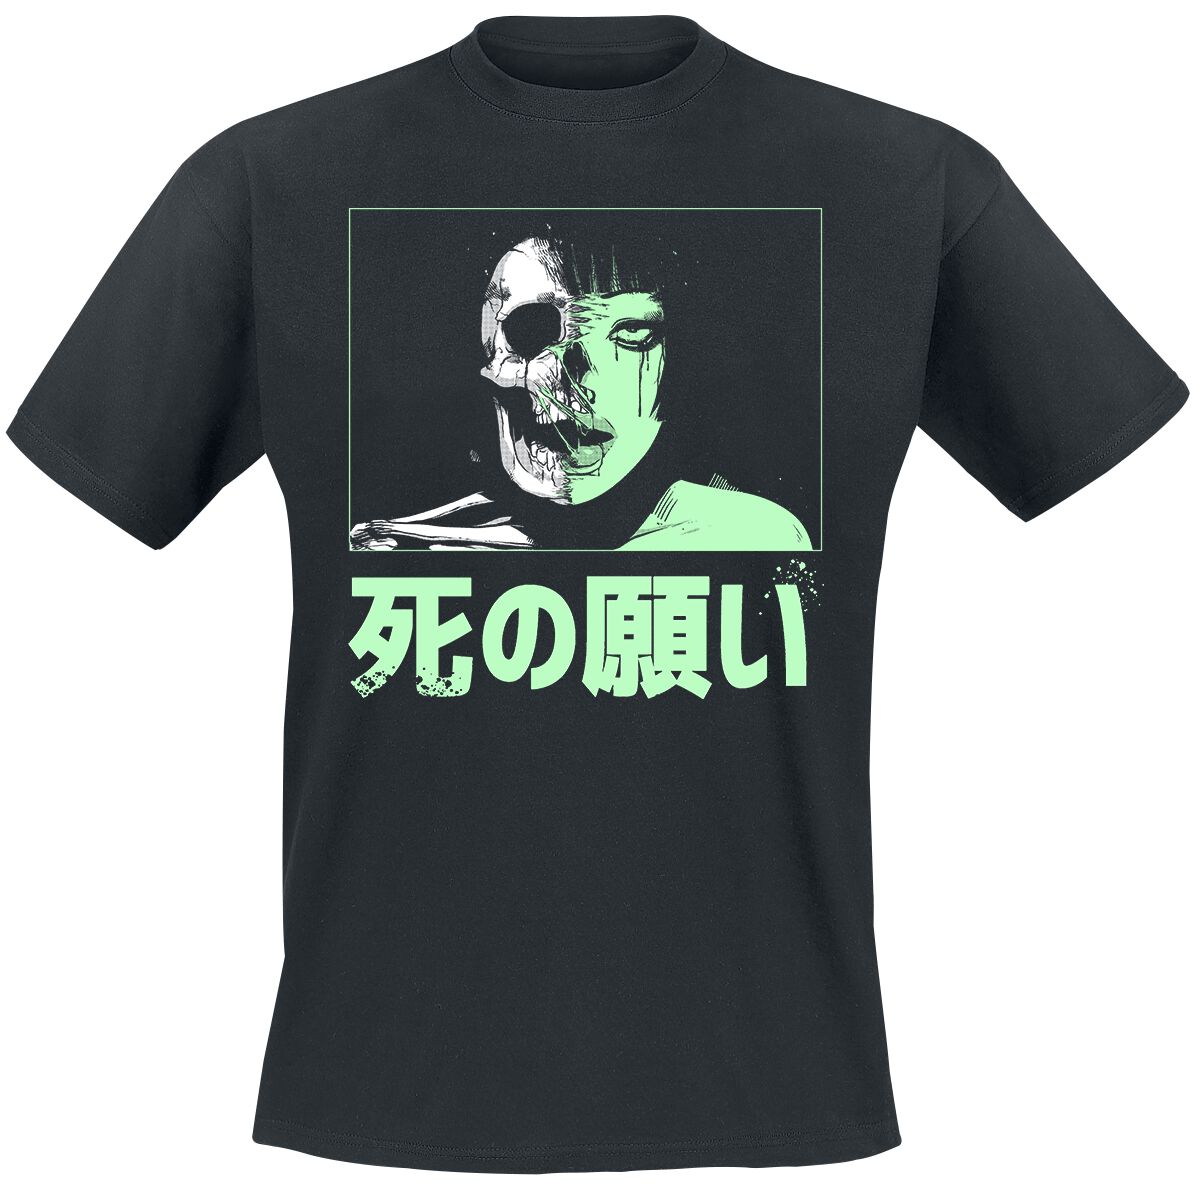 Zombie Makeout Club T-Shirt - ZMC - Half Life - S bis XL - für Männer - Größe L - schwarz  - Lizenzierter Fanartikel